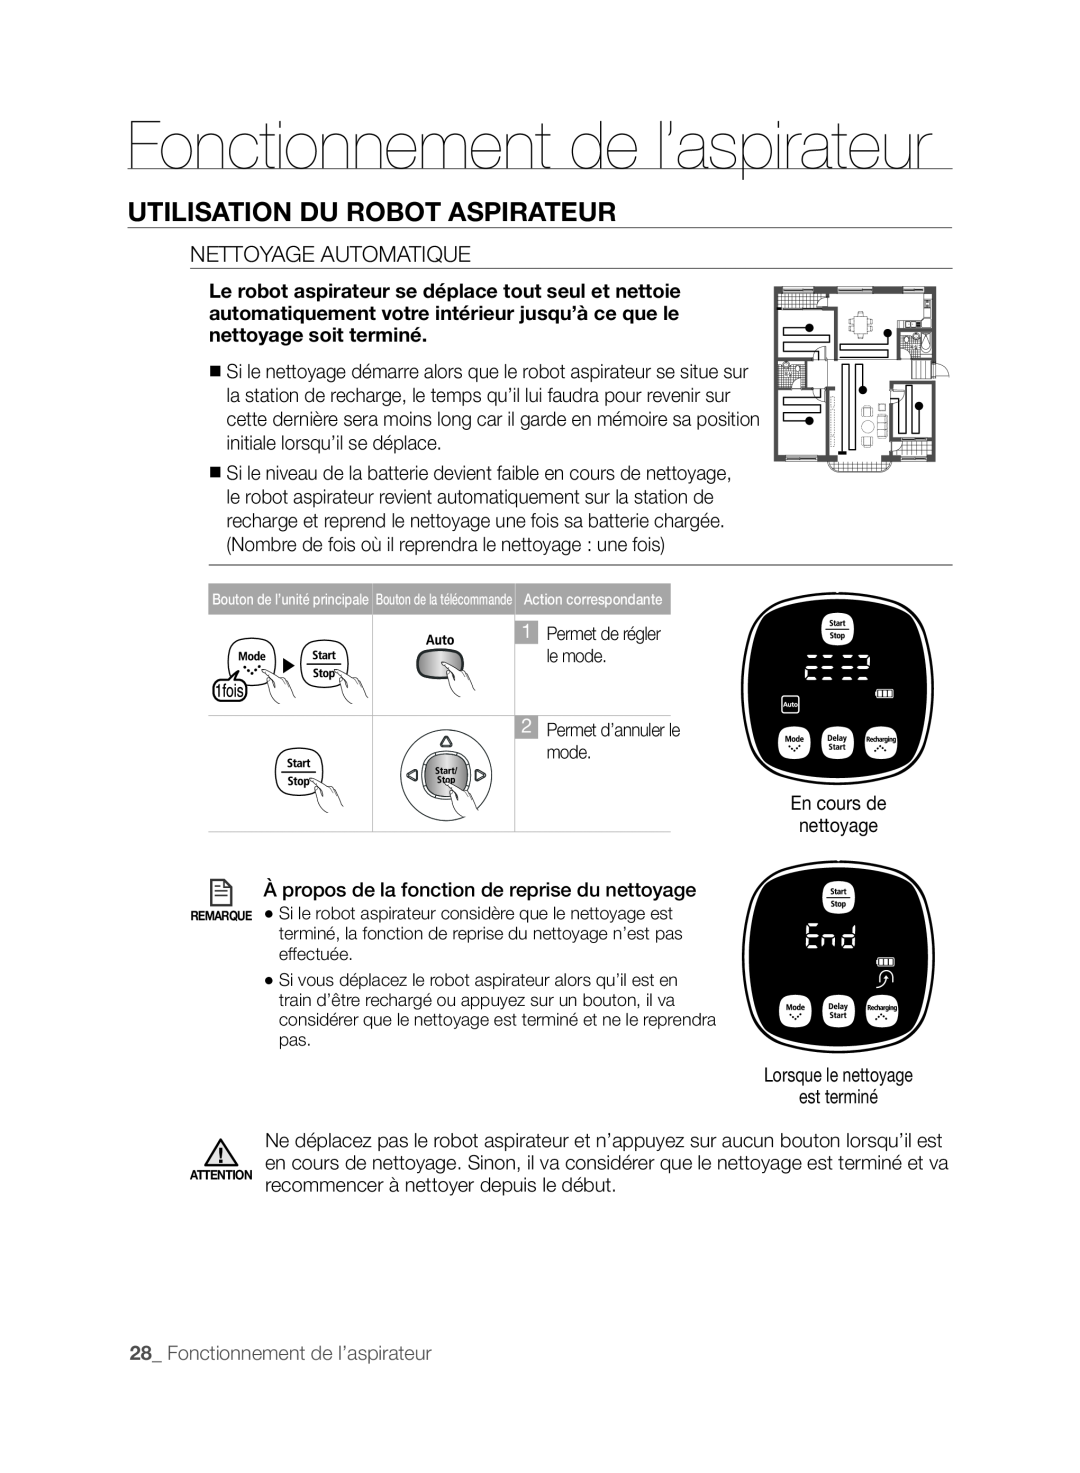 Samsung DJ68-00518A, VCR8830T1R Fonctionnement de l’aspirateur, Utilisation Du Robot Aspirateur, Nettoyage Automatique 